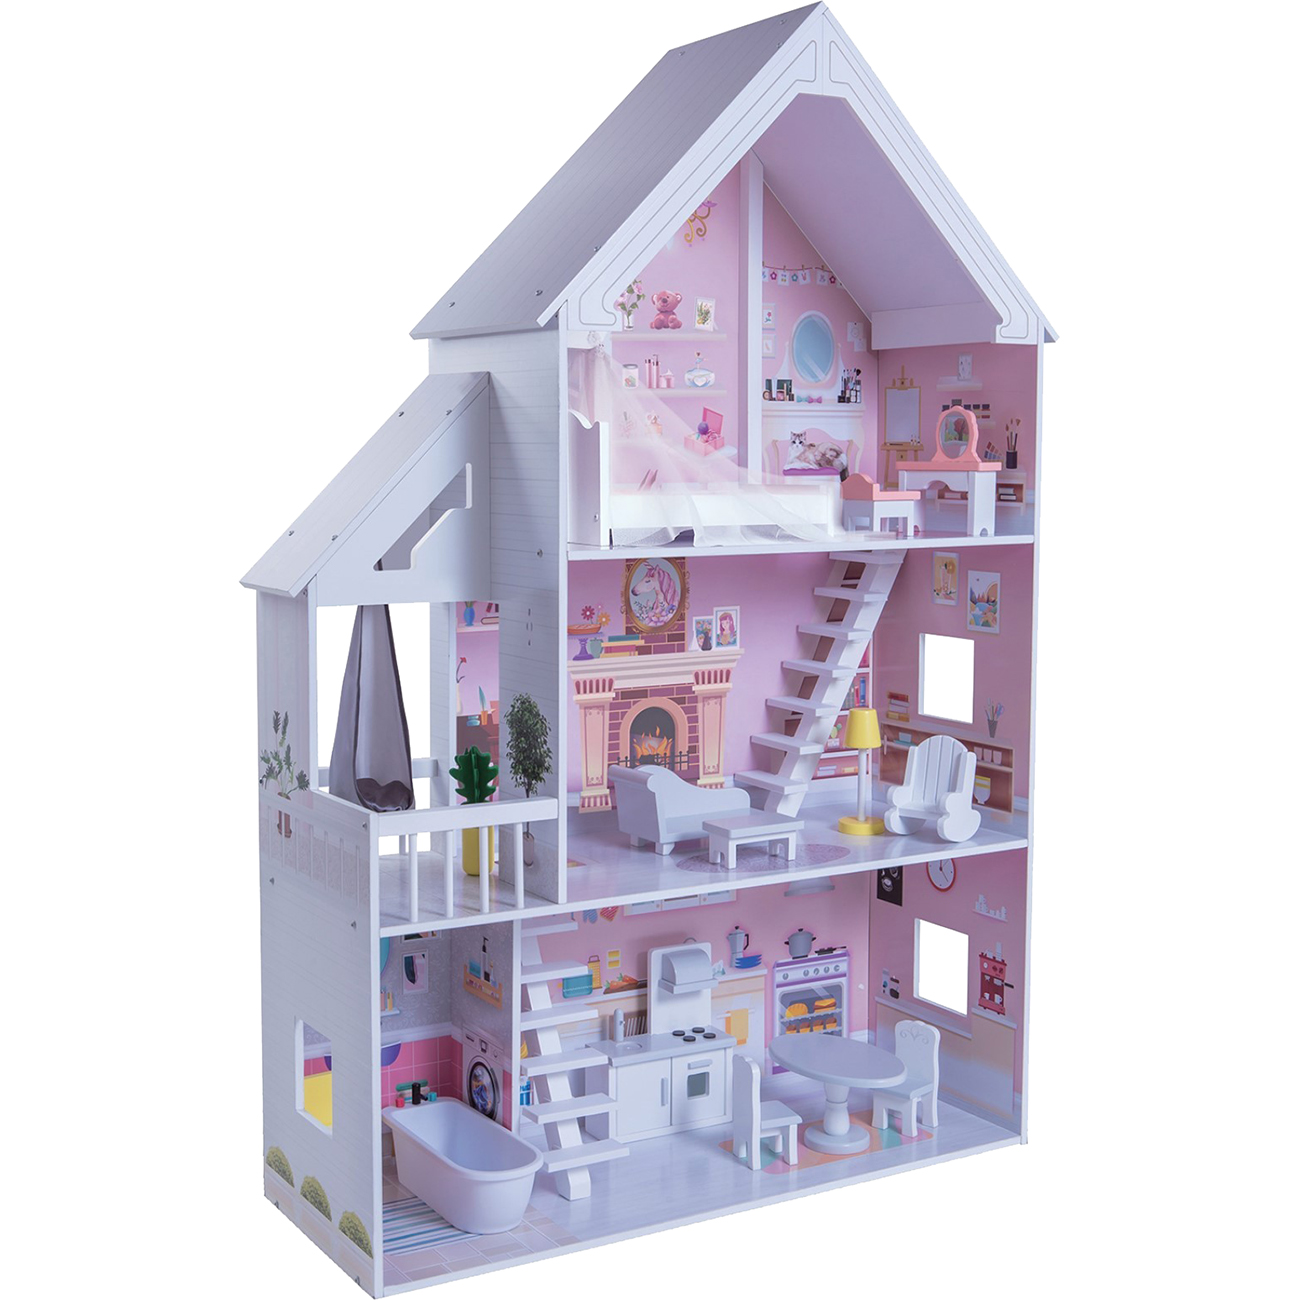 Кукольный домик вдохновение для кукол до 30 см 16 предметов мебели 2 лестницы